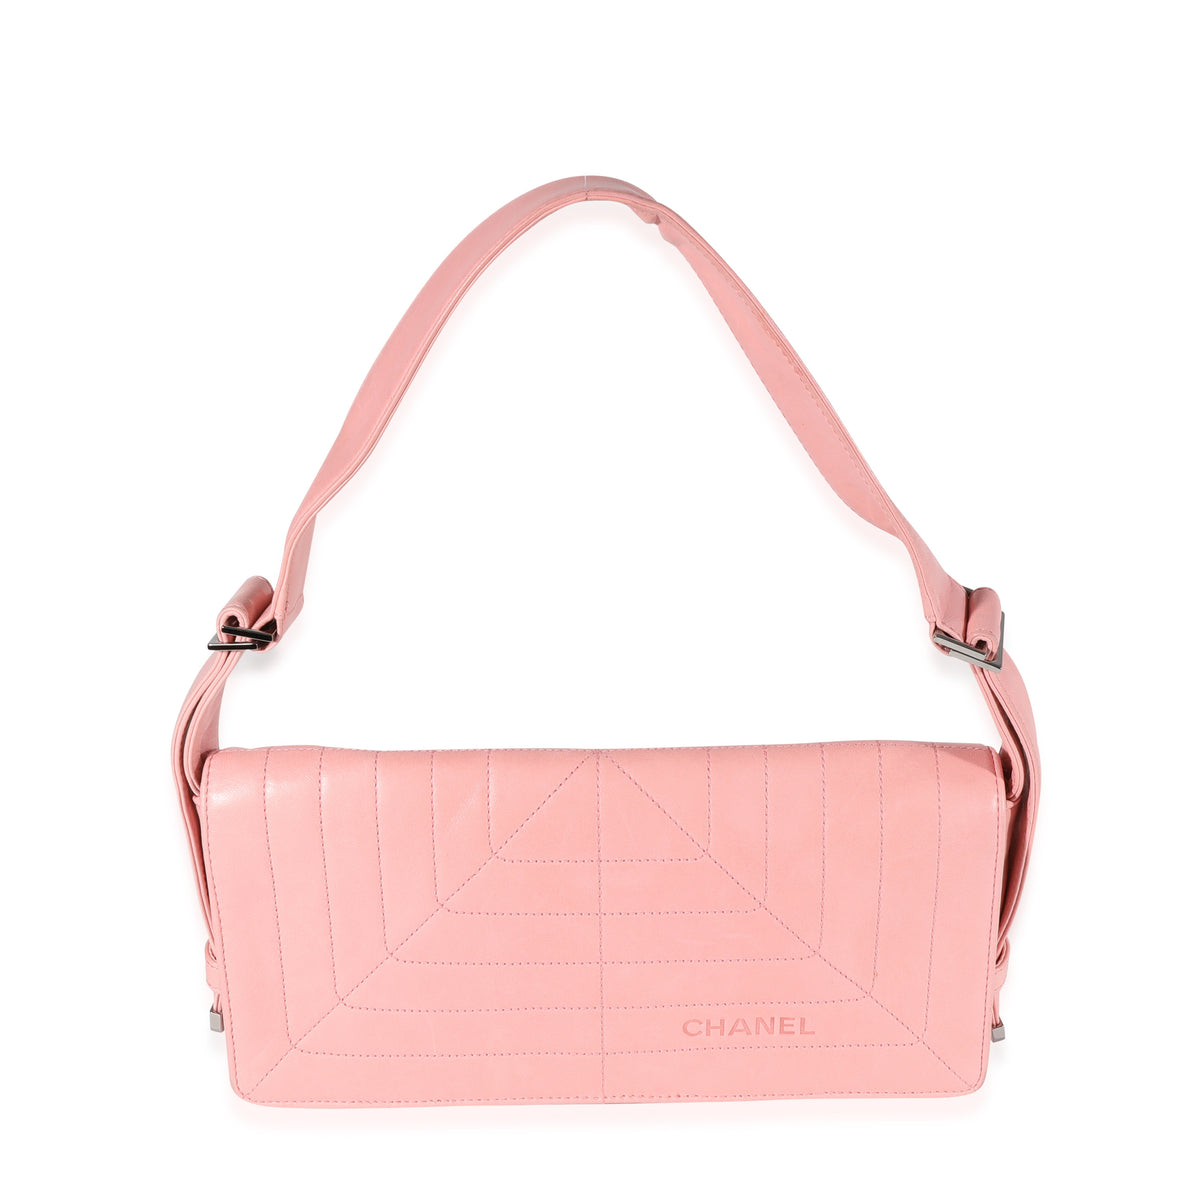 Chanel Pink Stitched Leather Flap Shoulder Bag, myGemma